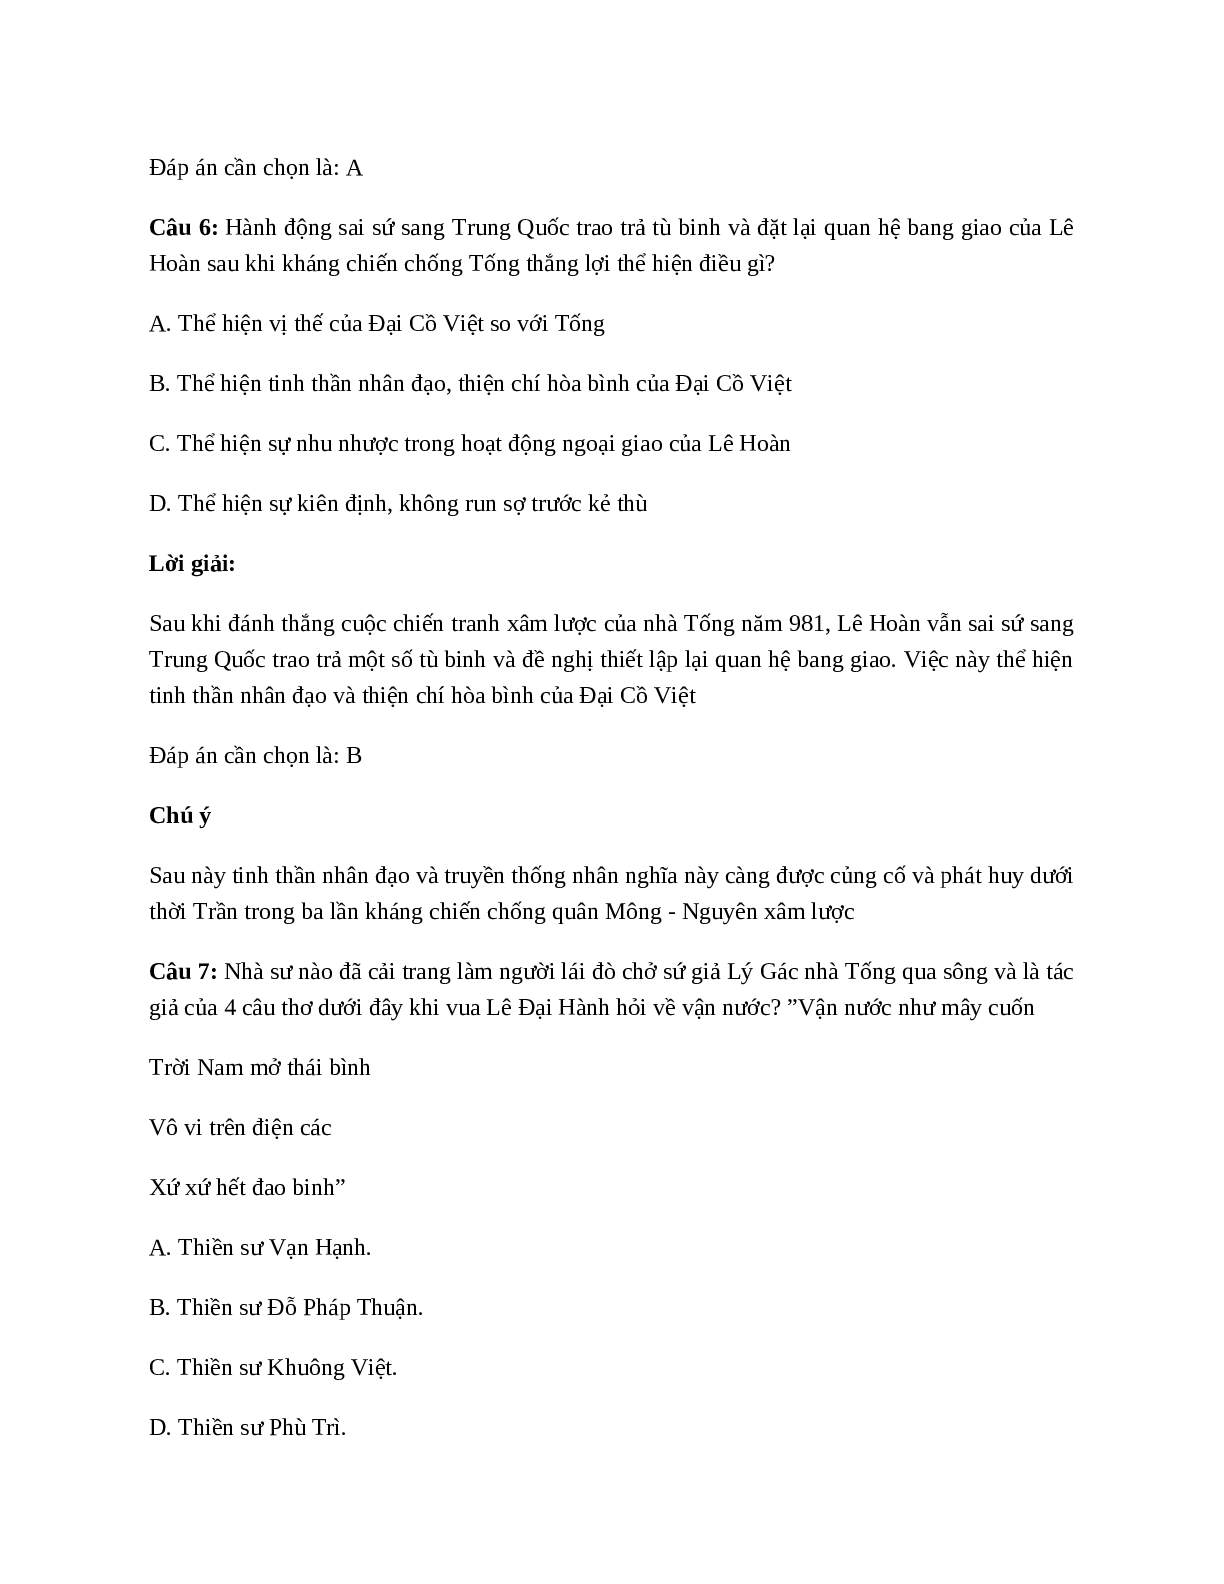 Lịch Sử 7 Bài 9: Nước Đại Cồ Việt thời Đinh - Tiền Lê (trang 9)